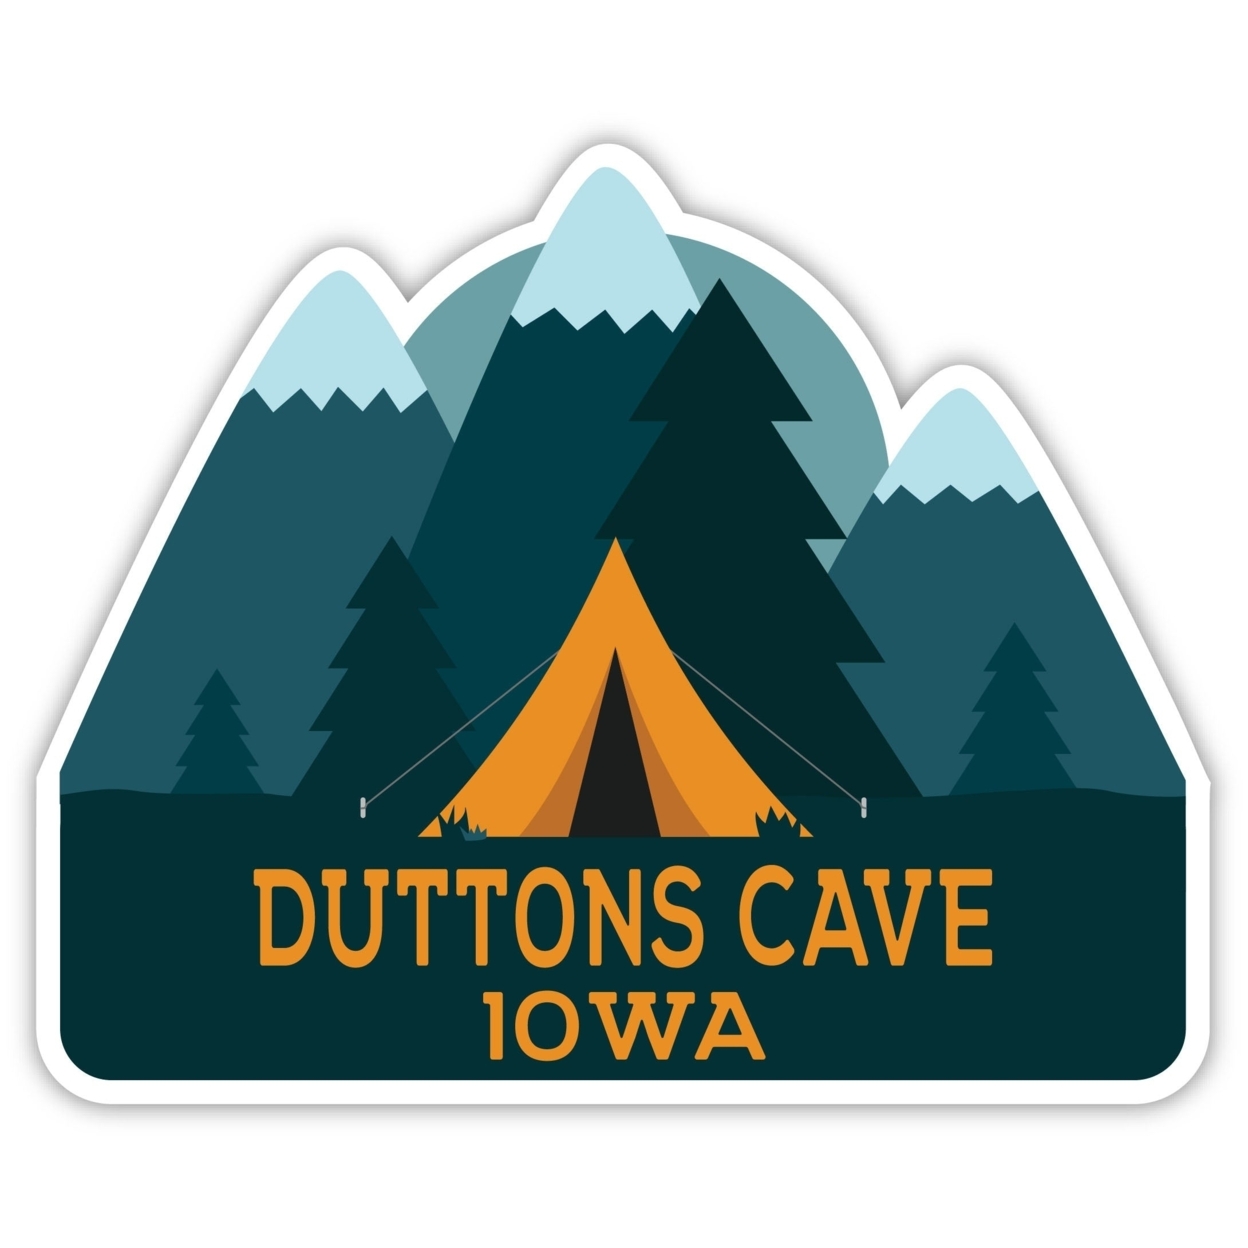 Duttons Cave Iowa Souvenir Decorative Stickers (Choose Theme And Size) - Single Unit, 4-Inch, Tent